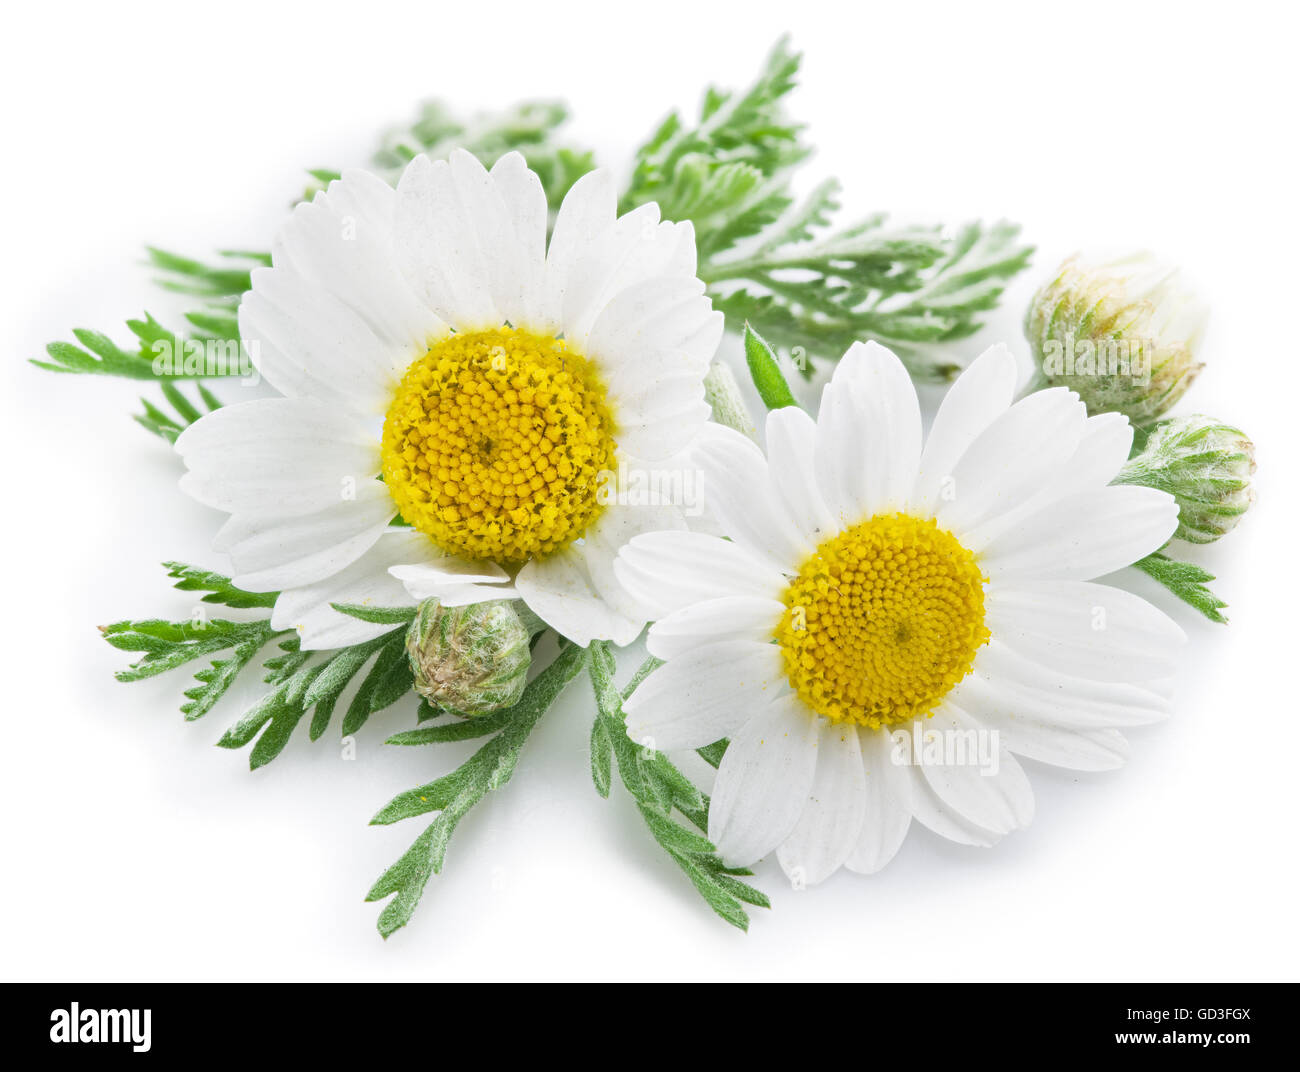 La camomilla o camomilla fiori isolati su sfondo bianco. Foto Stock